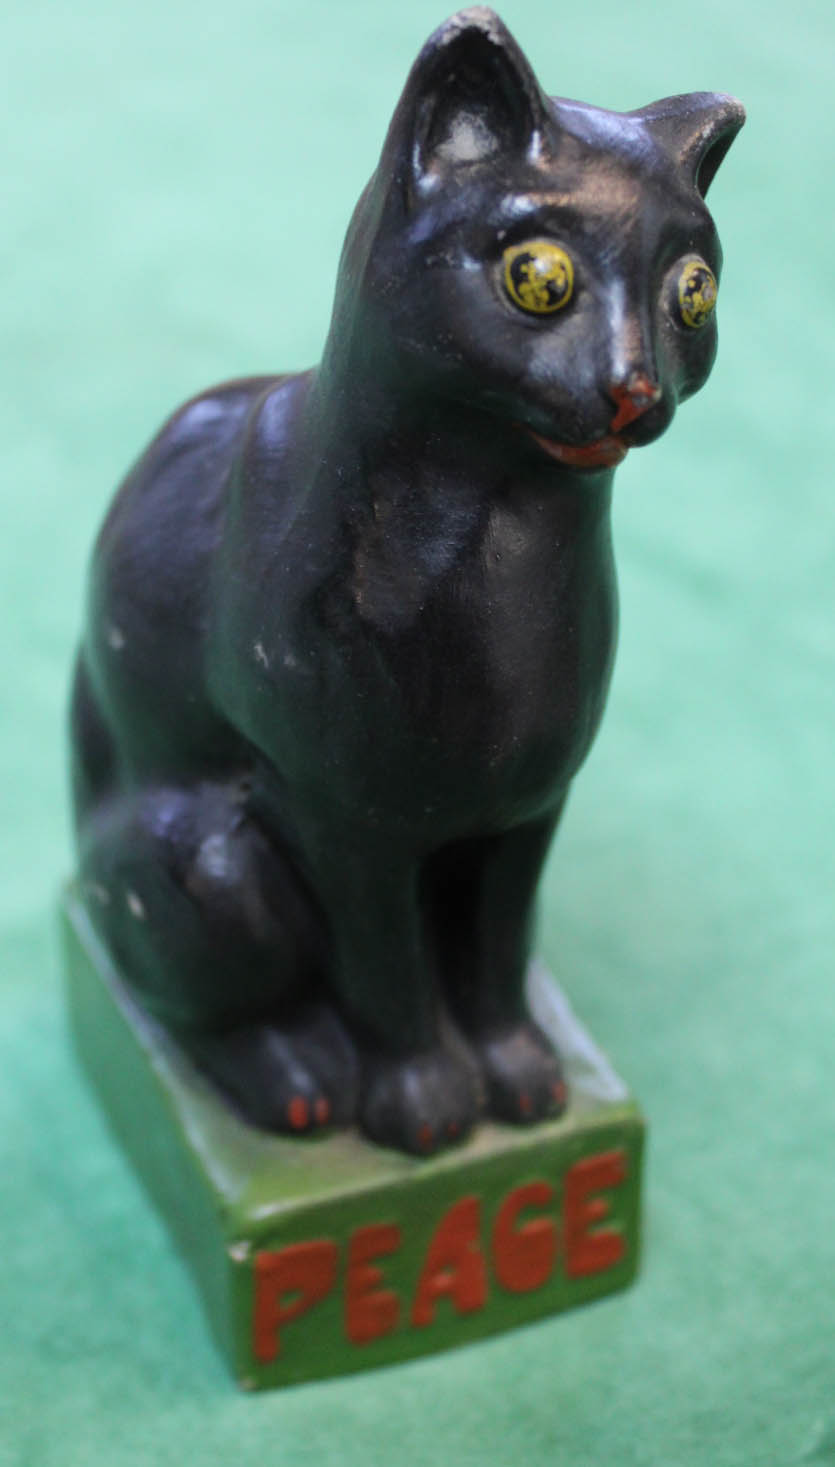 A black ceramic cat,